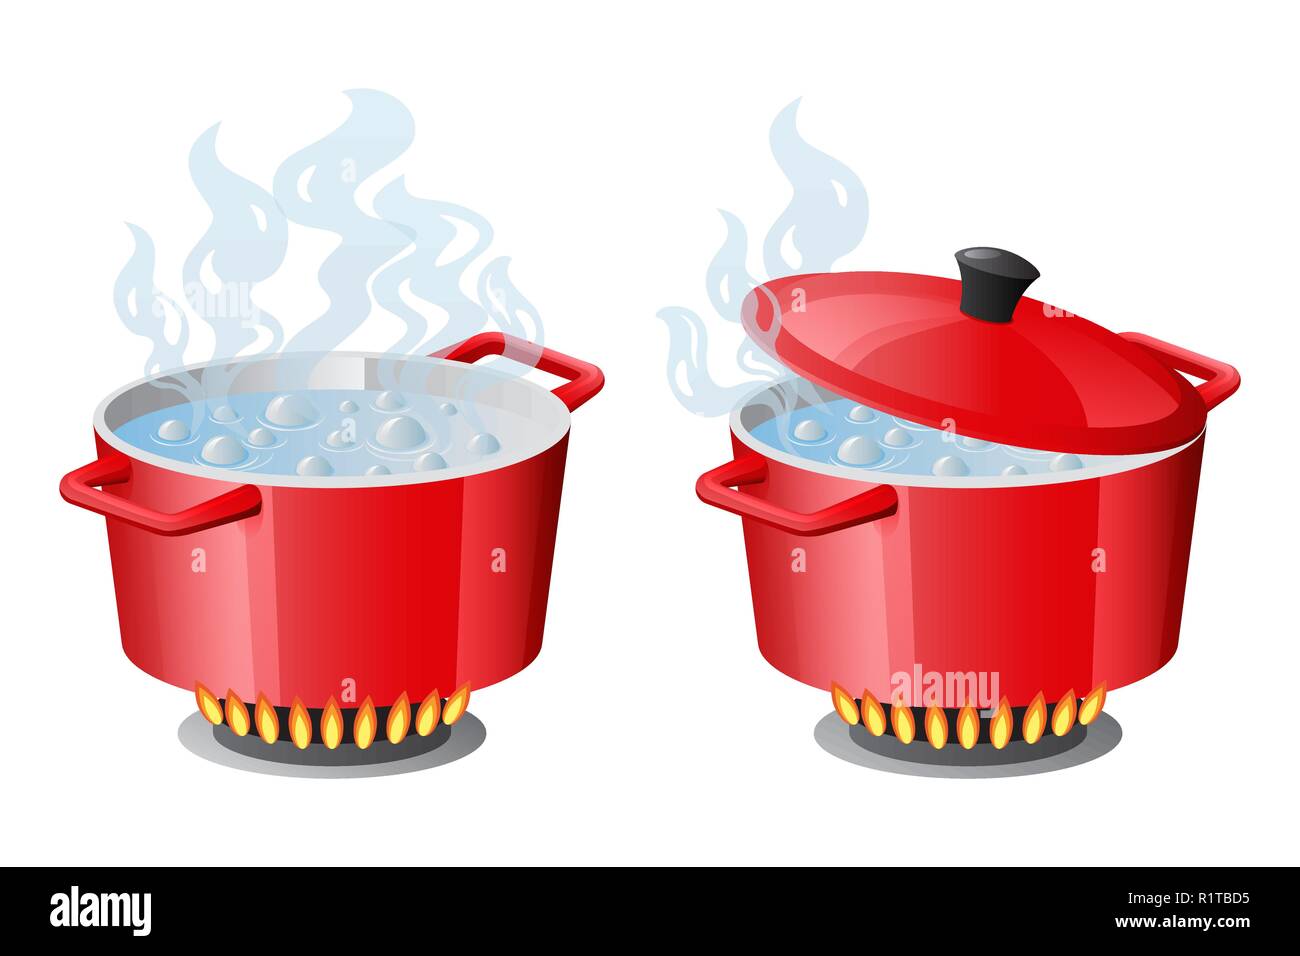 Set rot Pfannen mit kochendem Wasser, geöffnet und geschlossen Topf Deckel Stock Vektor